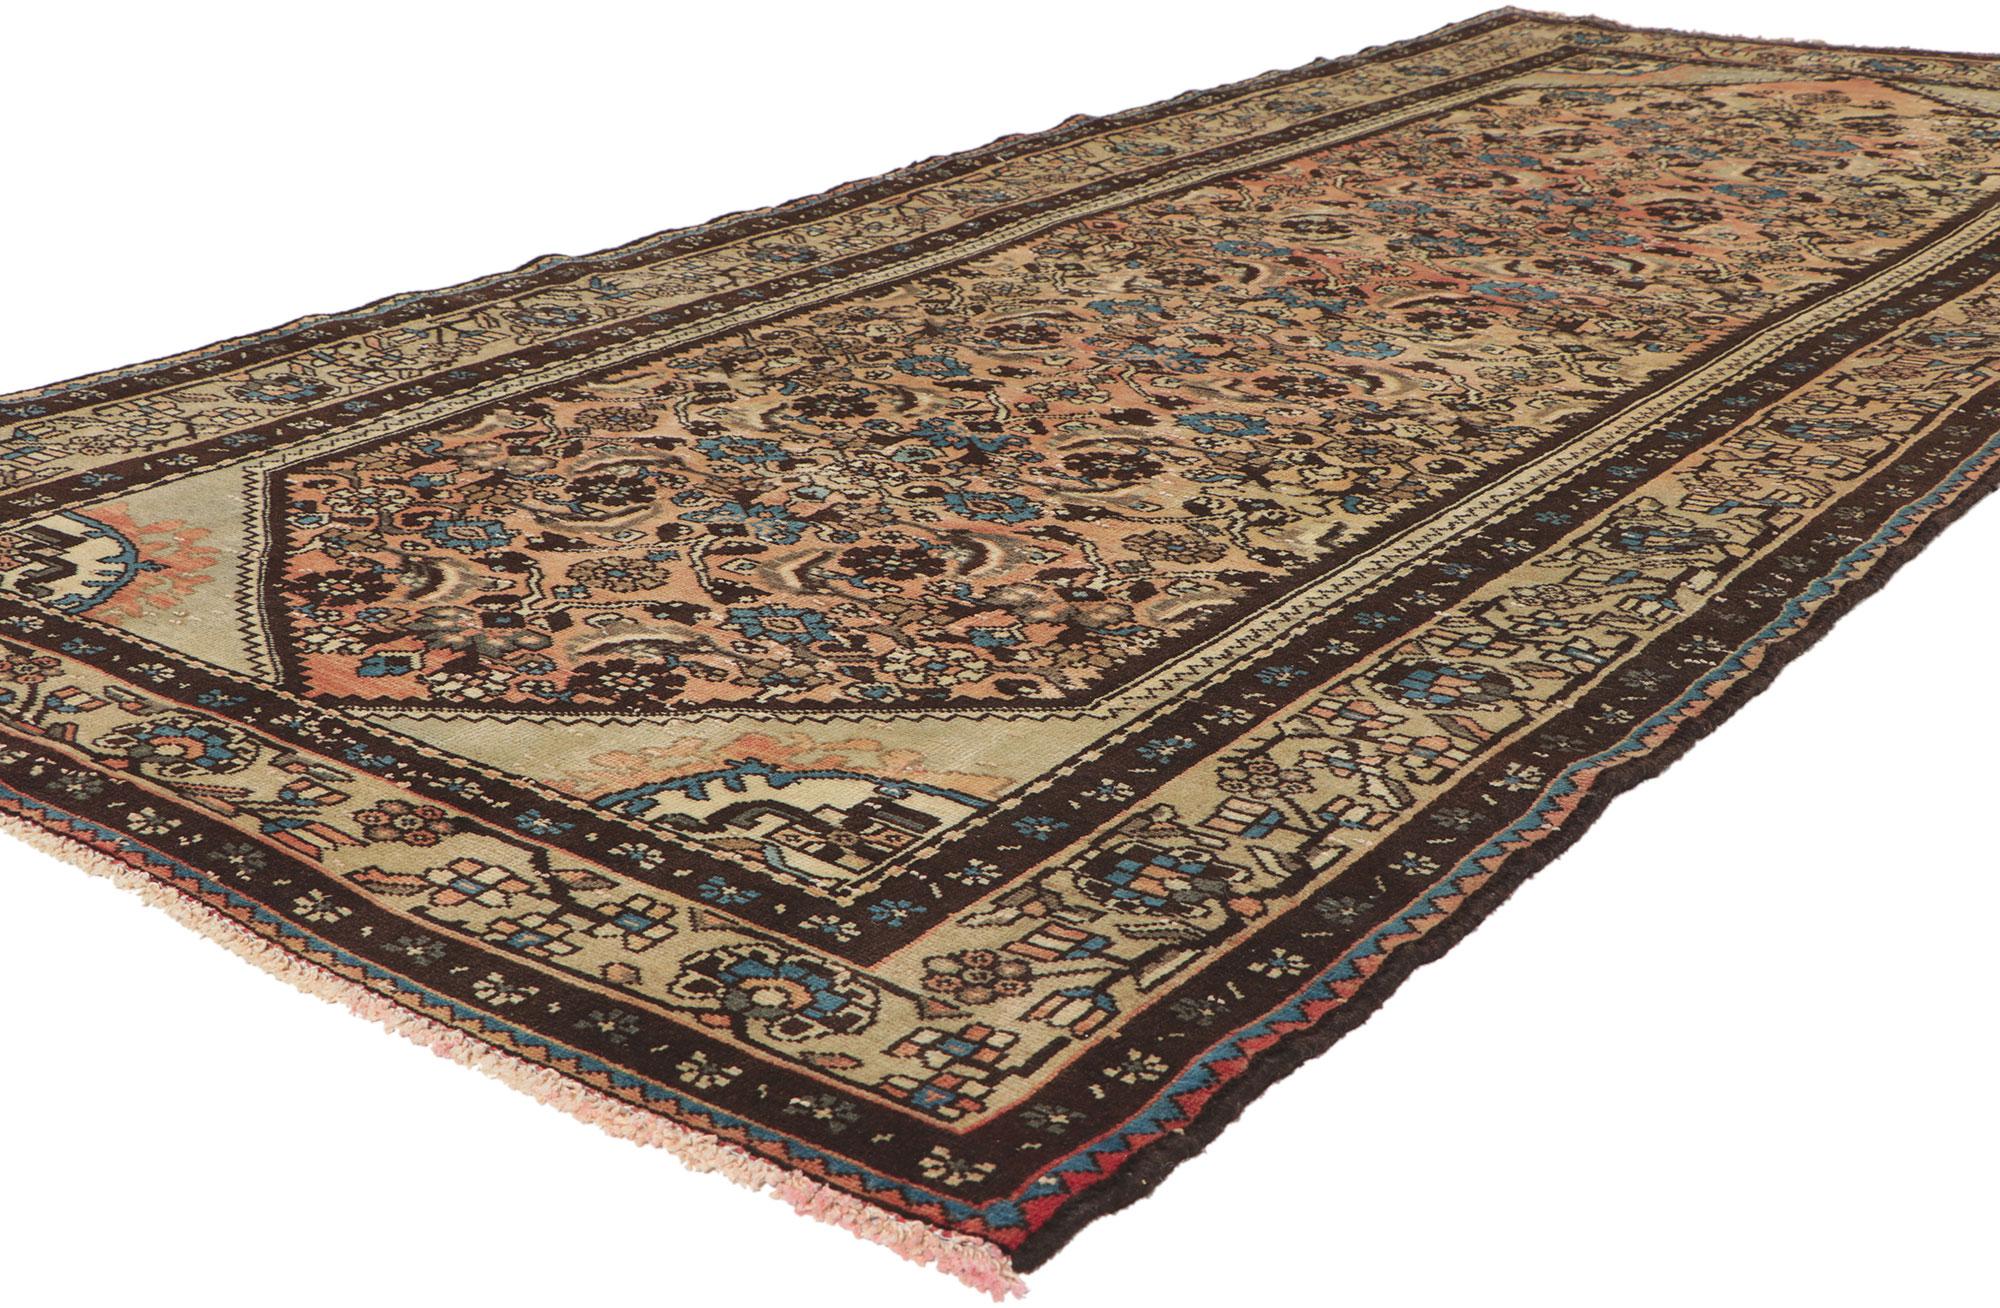 61153 Tapis Persan Vintage Hamadan, 04'05 x 10'00.
Avec sa beauté sans effort et son design intemporel, ce tapis persan vintage Hamadan en laine nouée à la main est prêt à impressionner. Le motif Herati accrocheur et la palette de couleurs